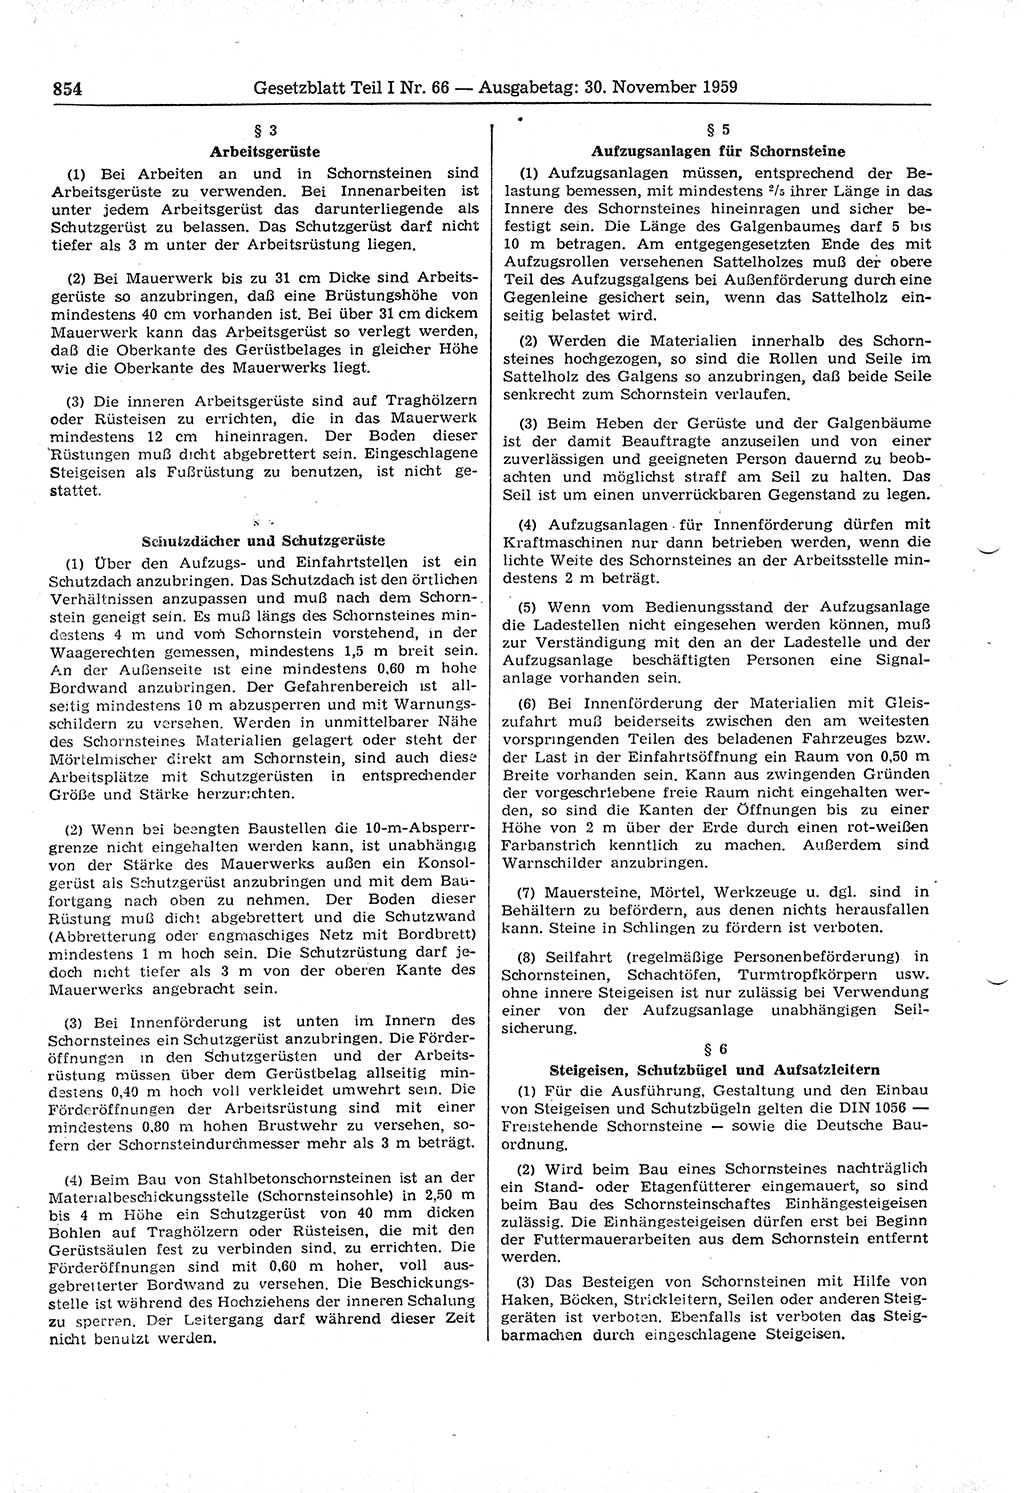 Gesetzblatt (GBl.) der Deutschen Demokratischen Republik (DDR) Teil Ⅰ 1959, Seite 854 (GBl. DDR Ⅰ 1959, S. 854)